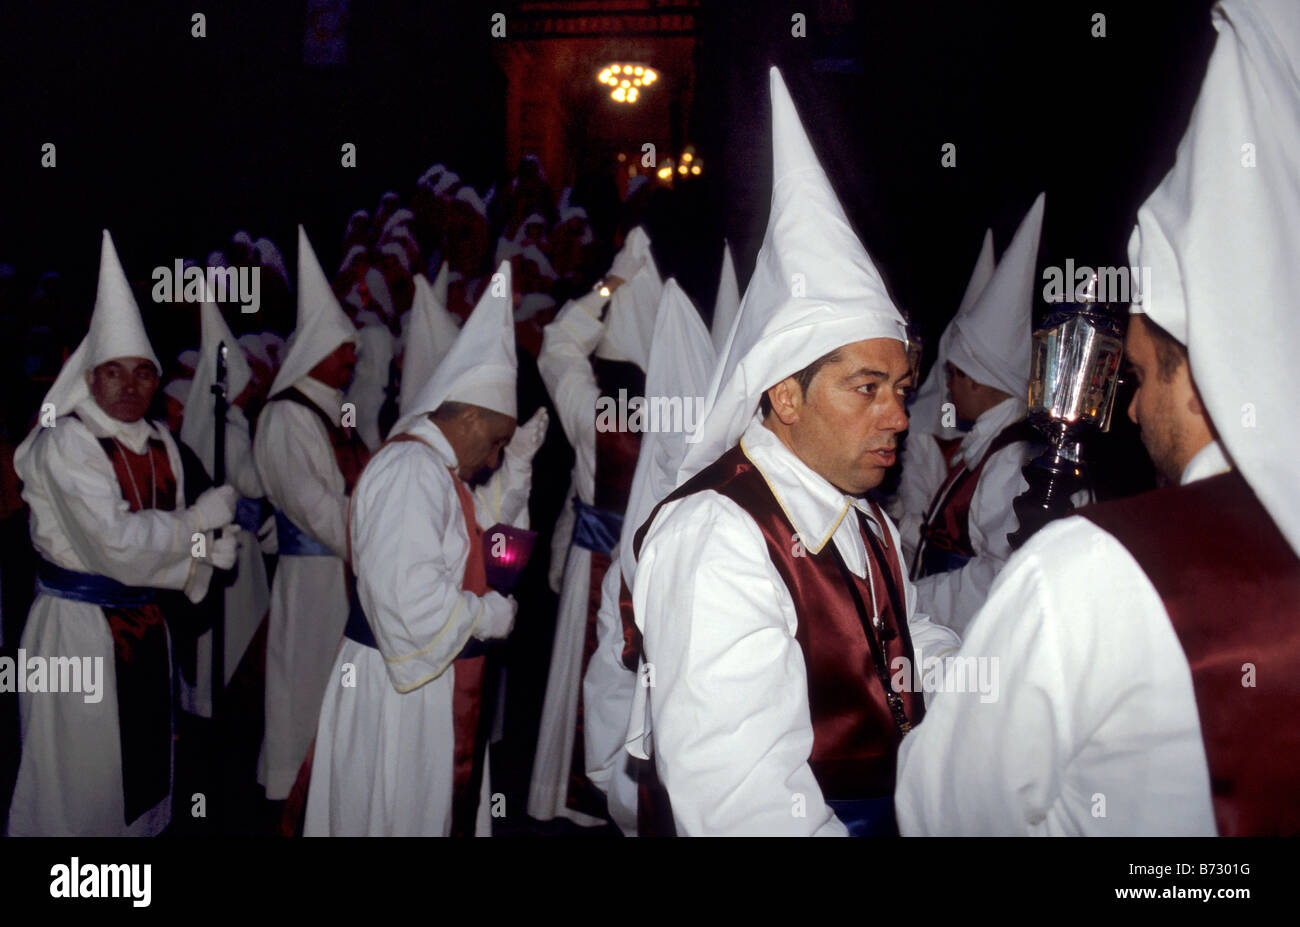 Pénitents à Semaine Sainte Semaine Sainte procession le dimanche des Rameaux nuit à Enna Sicile Italie Banque D'Images